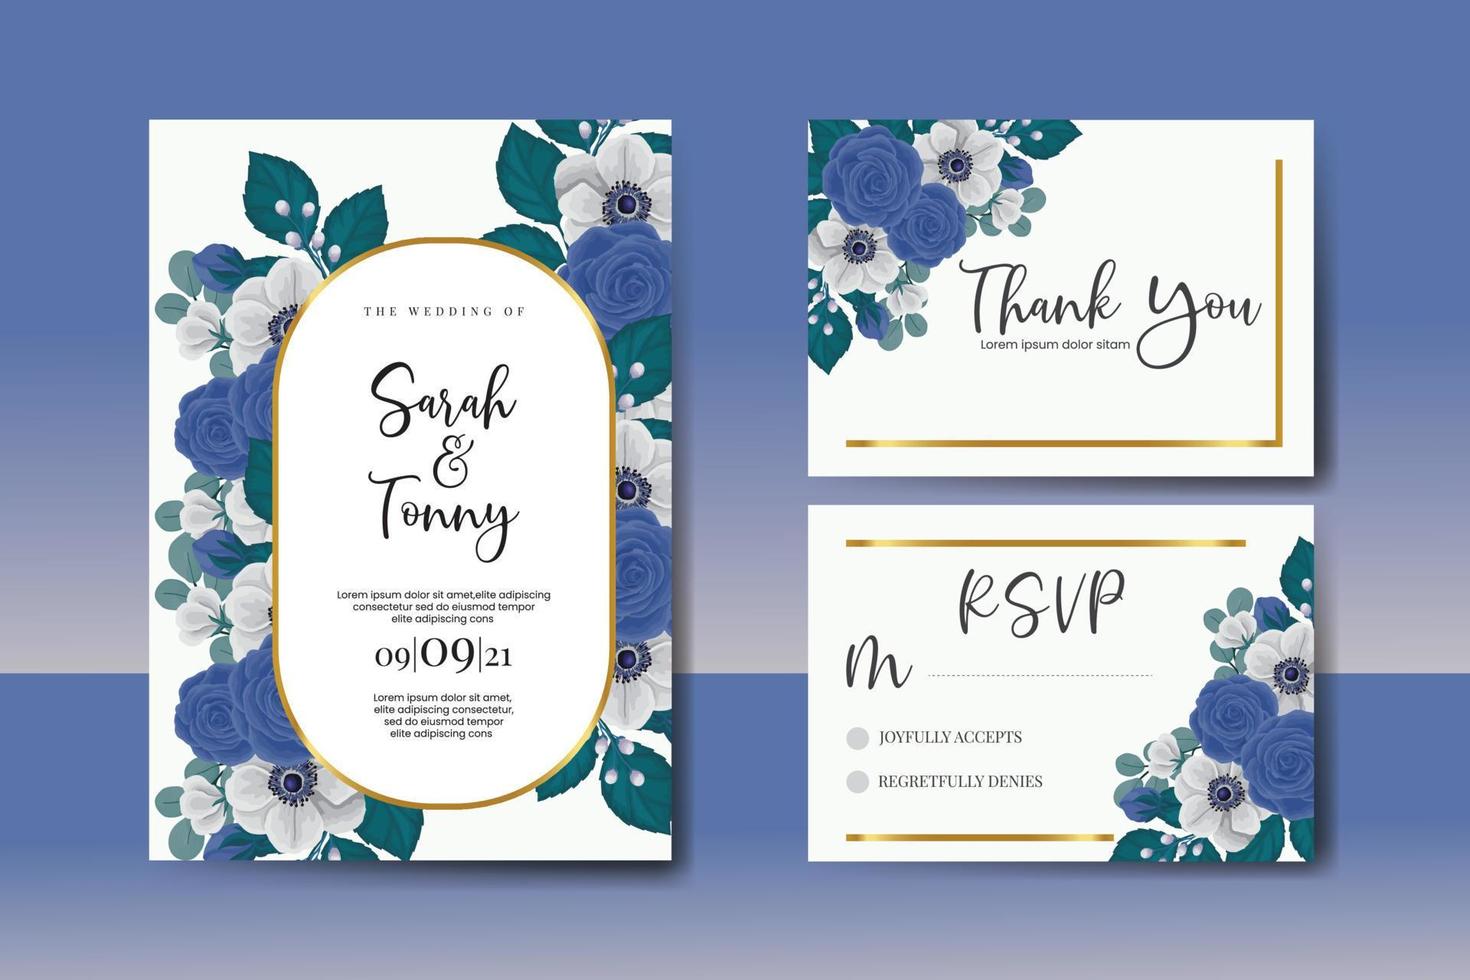 Boda invitación marco colocar, floral acuarela digital mano dibujado azul Rosa flor diseño invitación tarjeta modelo vector